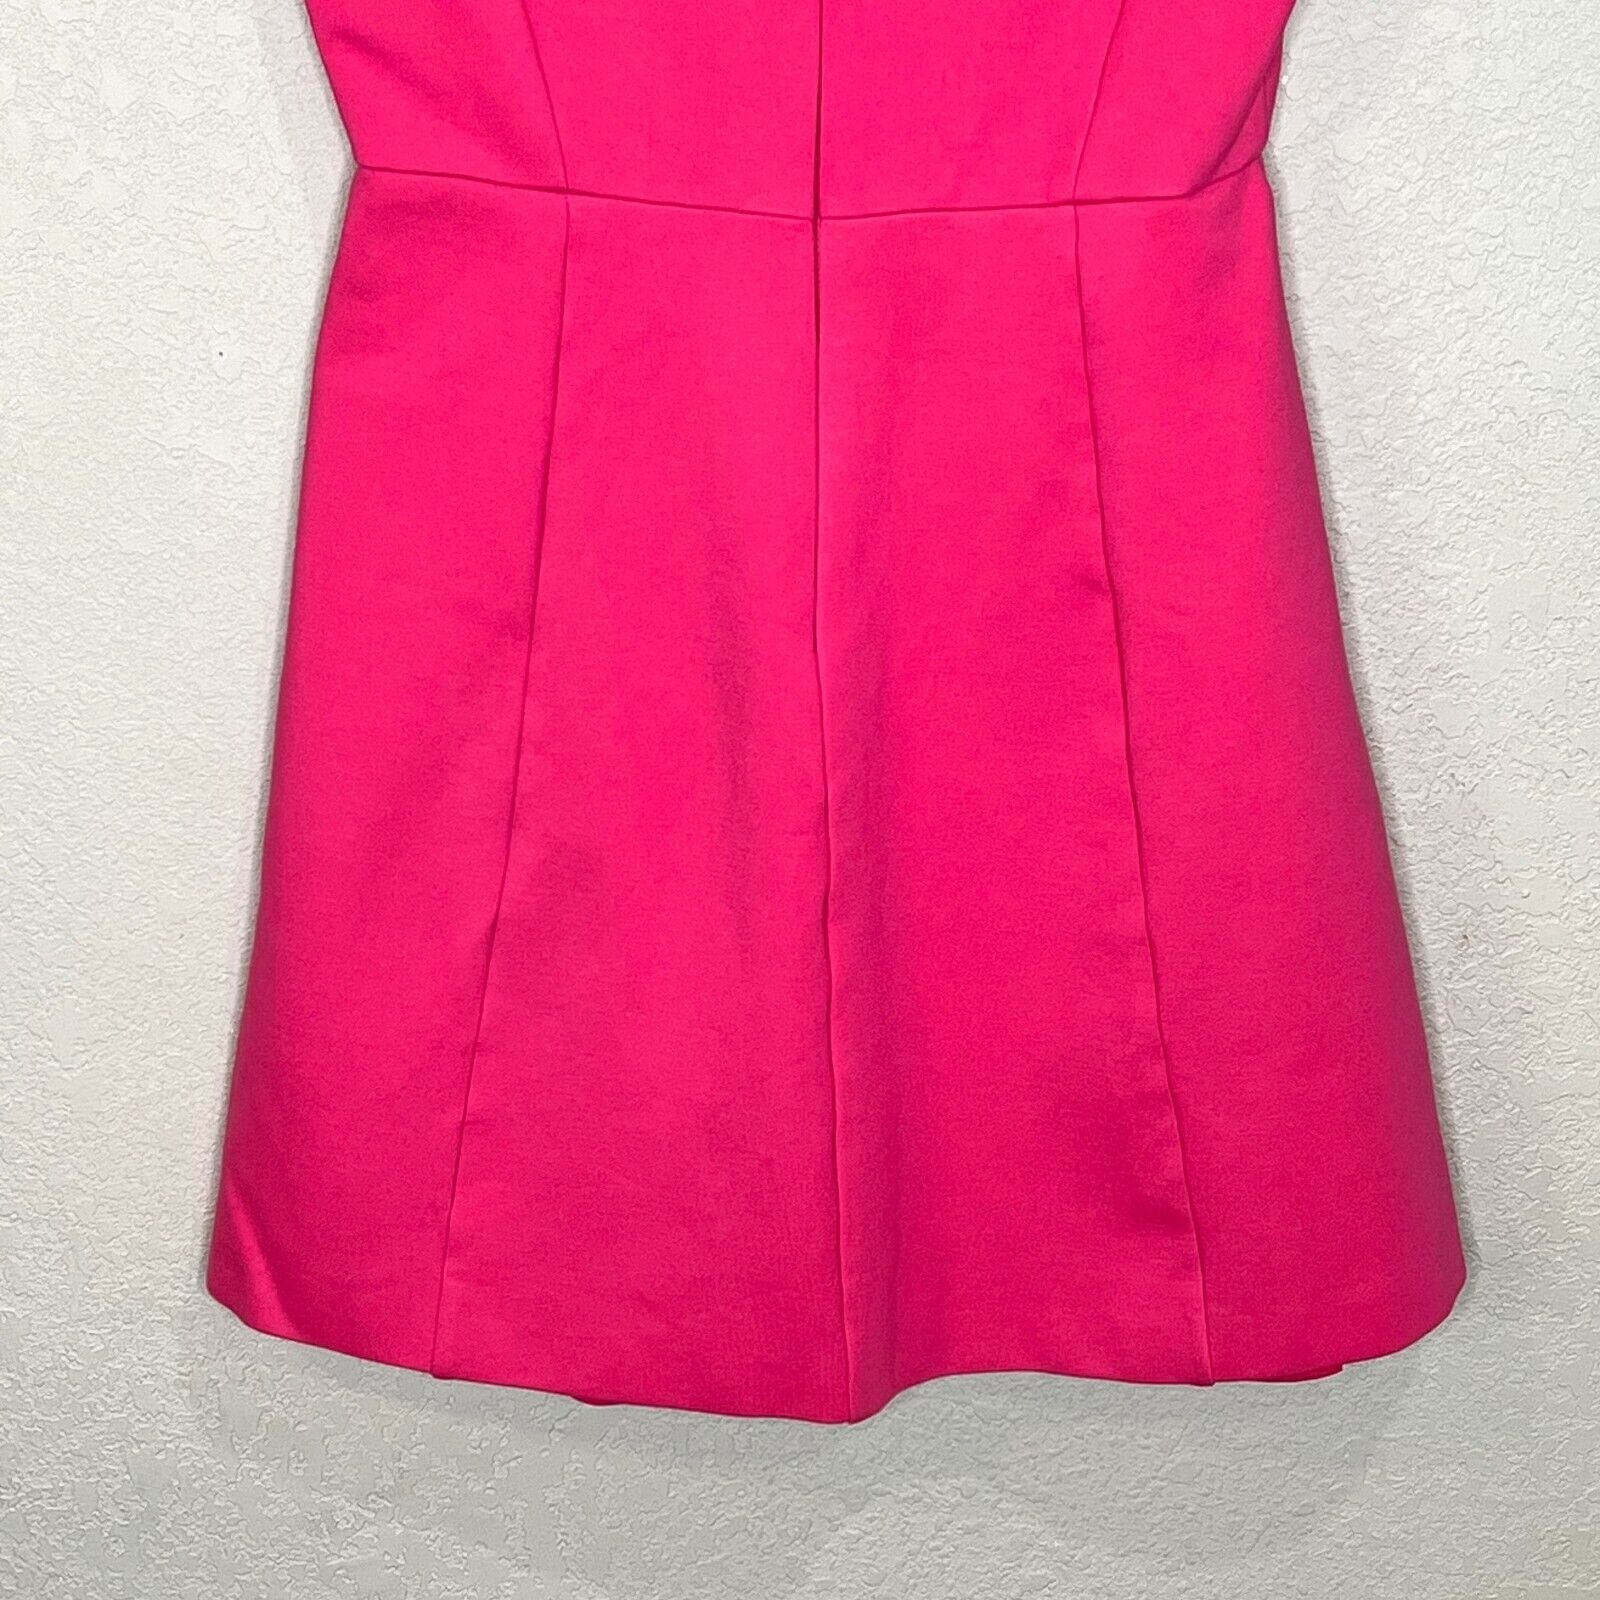 Halston Heritage Pink Cutout Mini Dress Size 0